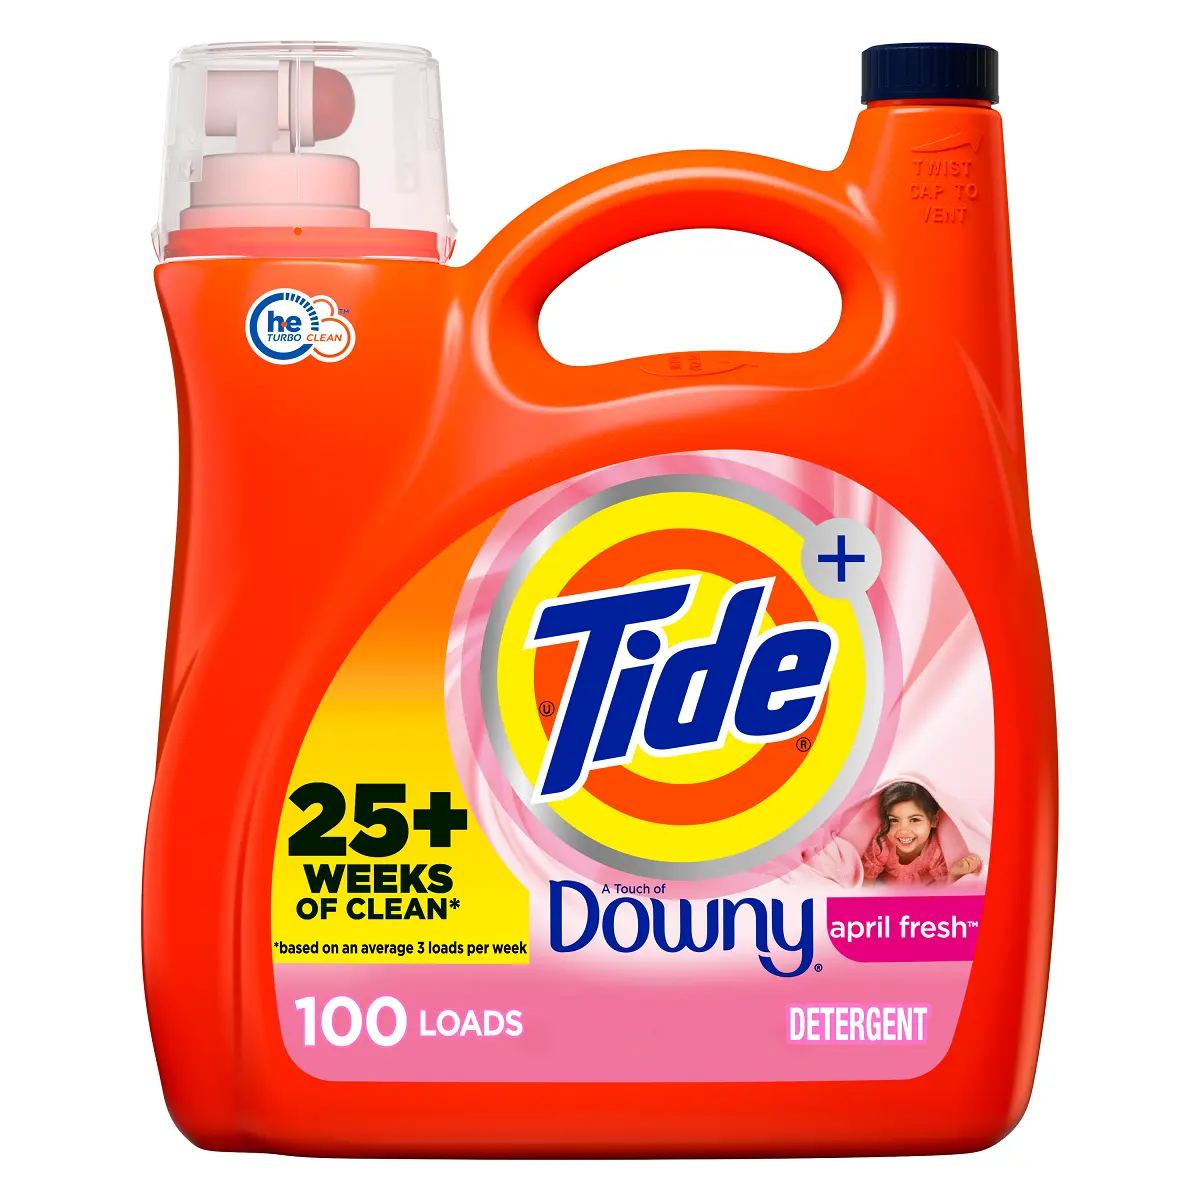 Toplu satış çevrimiçi satın alma gelgit Downy nisan taze koku sıvı çamaşır deterjanı